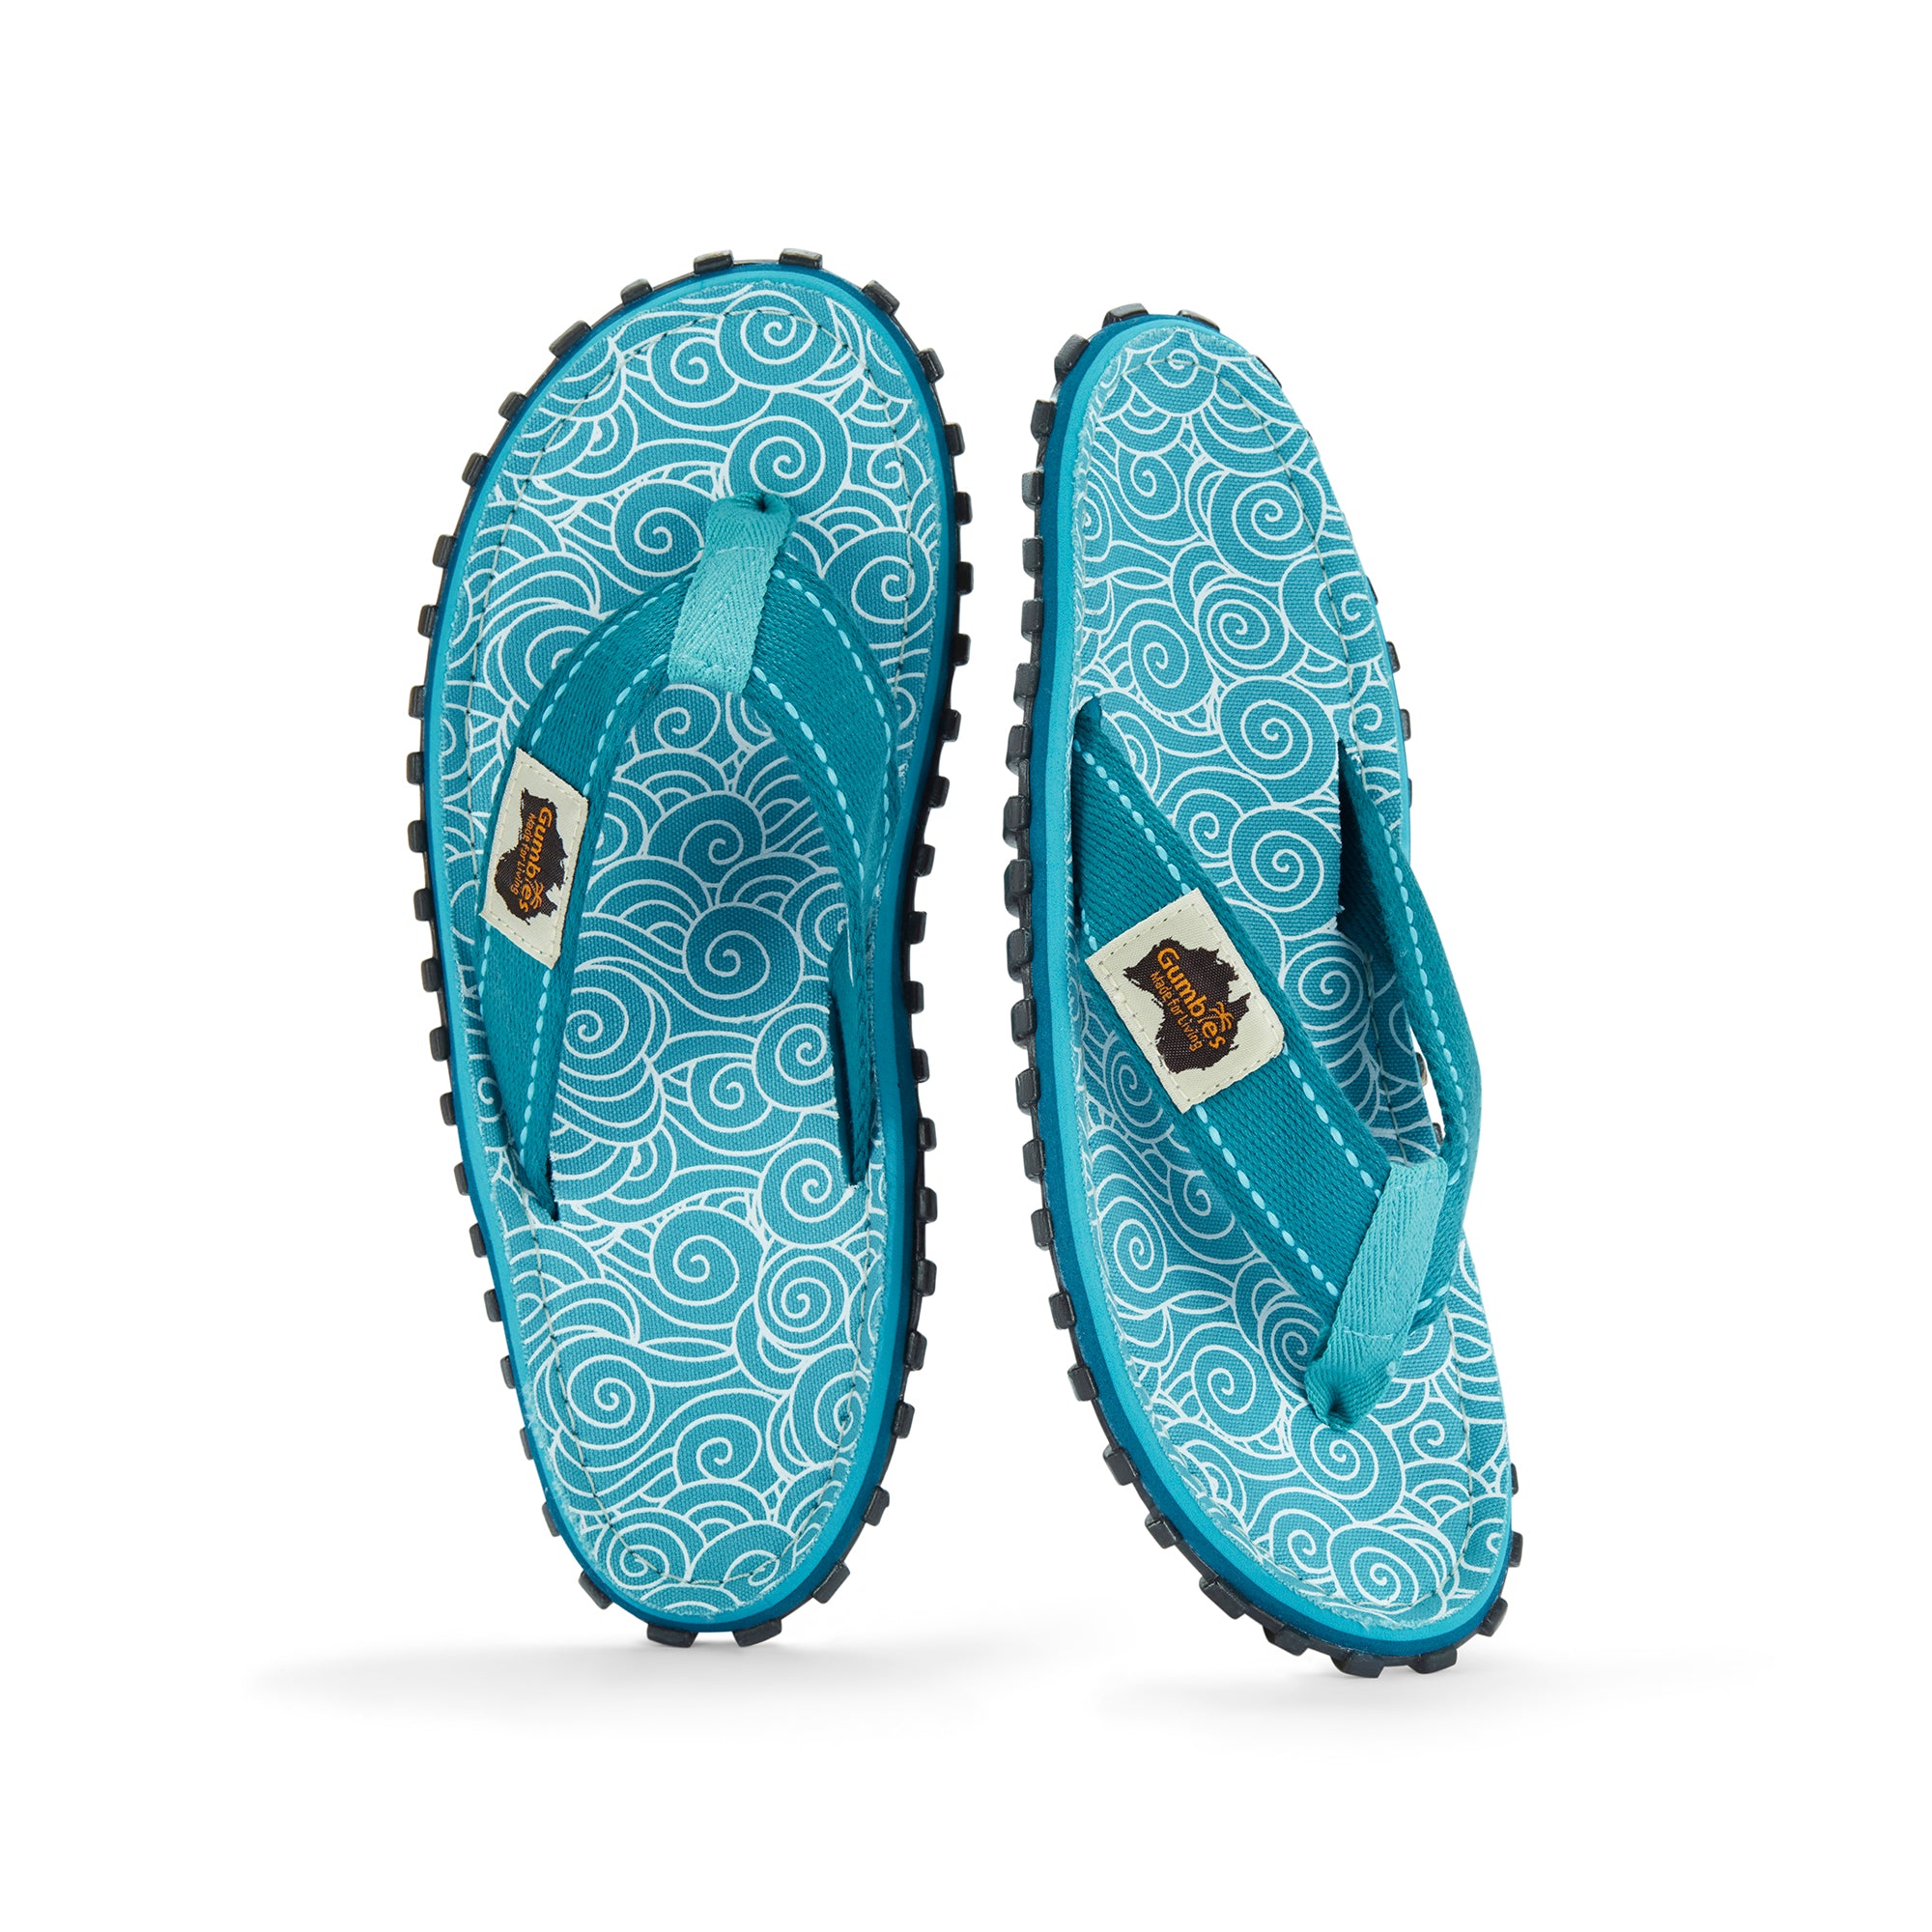 Islander Thongs - Women's - Turquoise Swirls